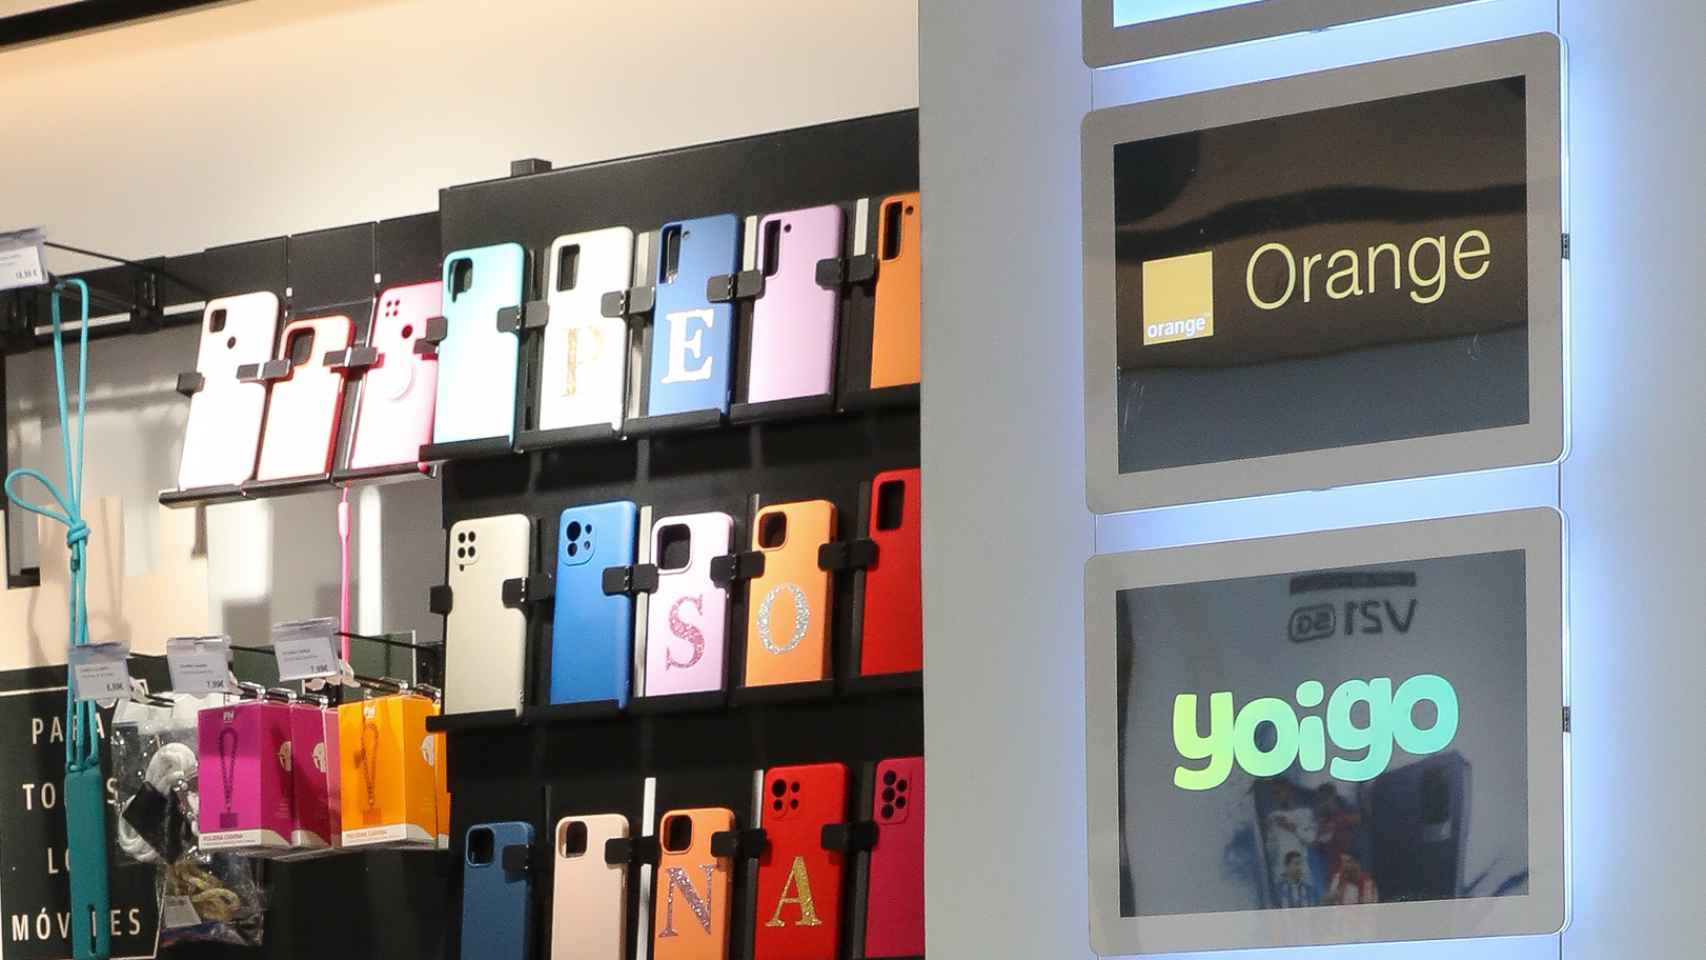 Imagen de los logos de Orange y Yoigo (marca del grupo MásMóvil) en una tienda de telefonía.